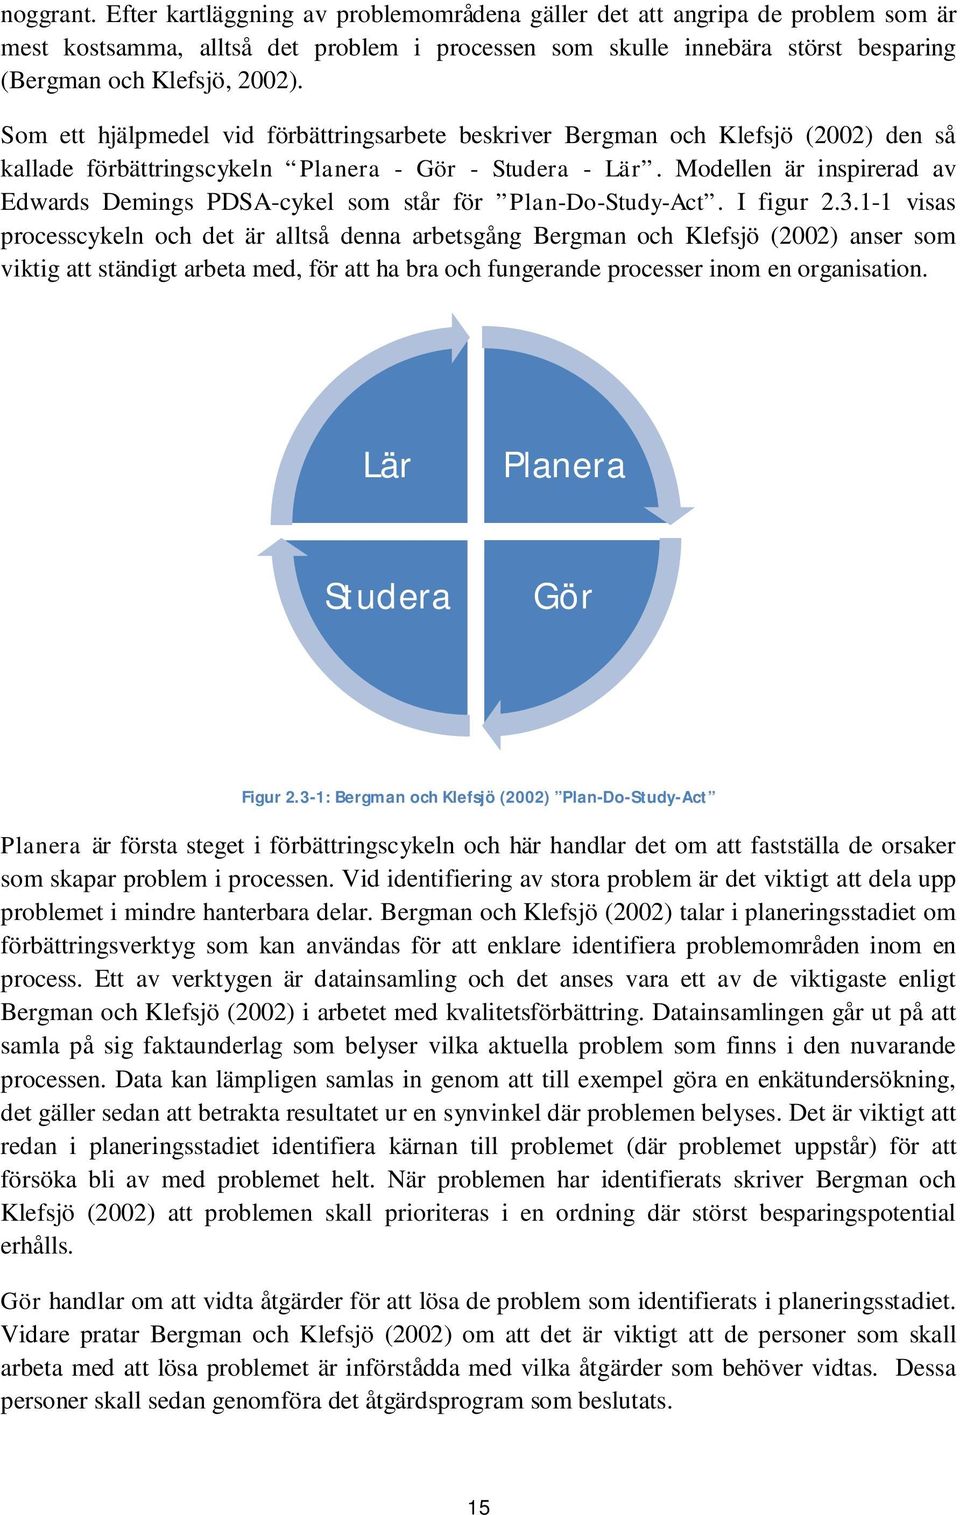 Som ett hjälpmedel vid förbättringsarbete beskriver Bergman och Klefsjö (2002) den så kallade förbättringscykeln Planera - Gör - Studera - Lär.